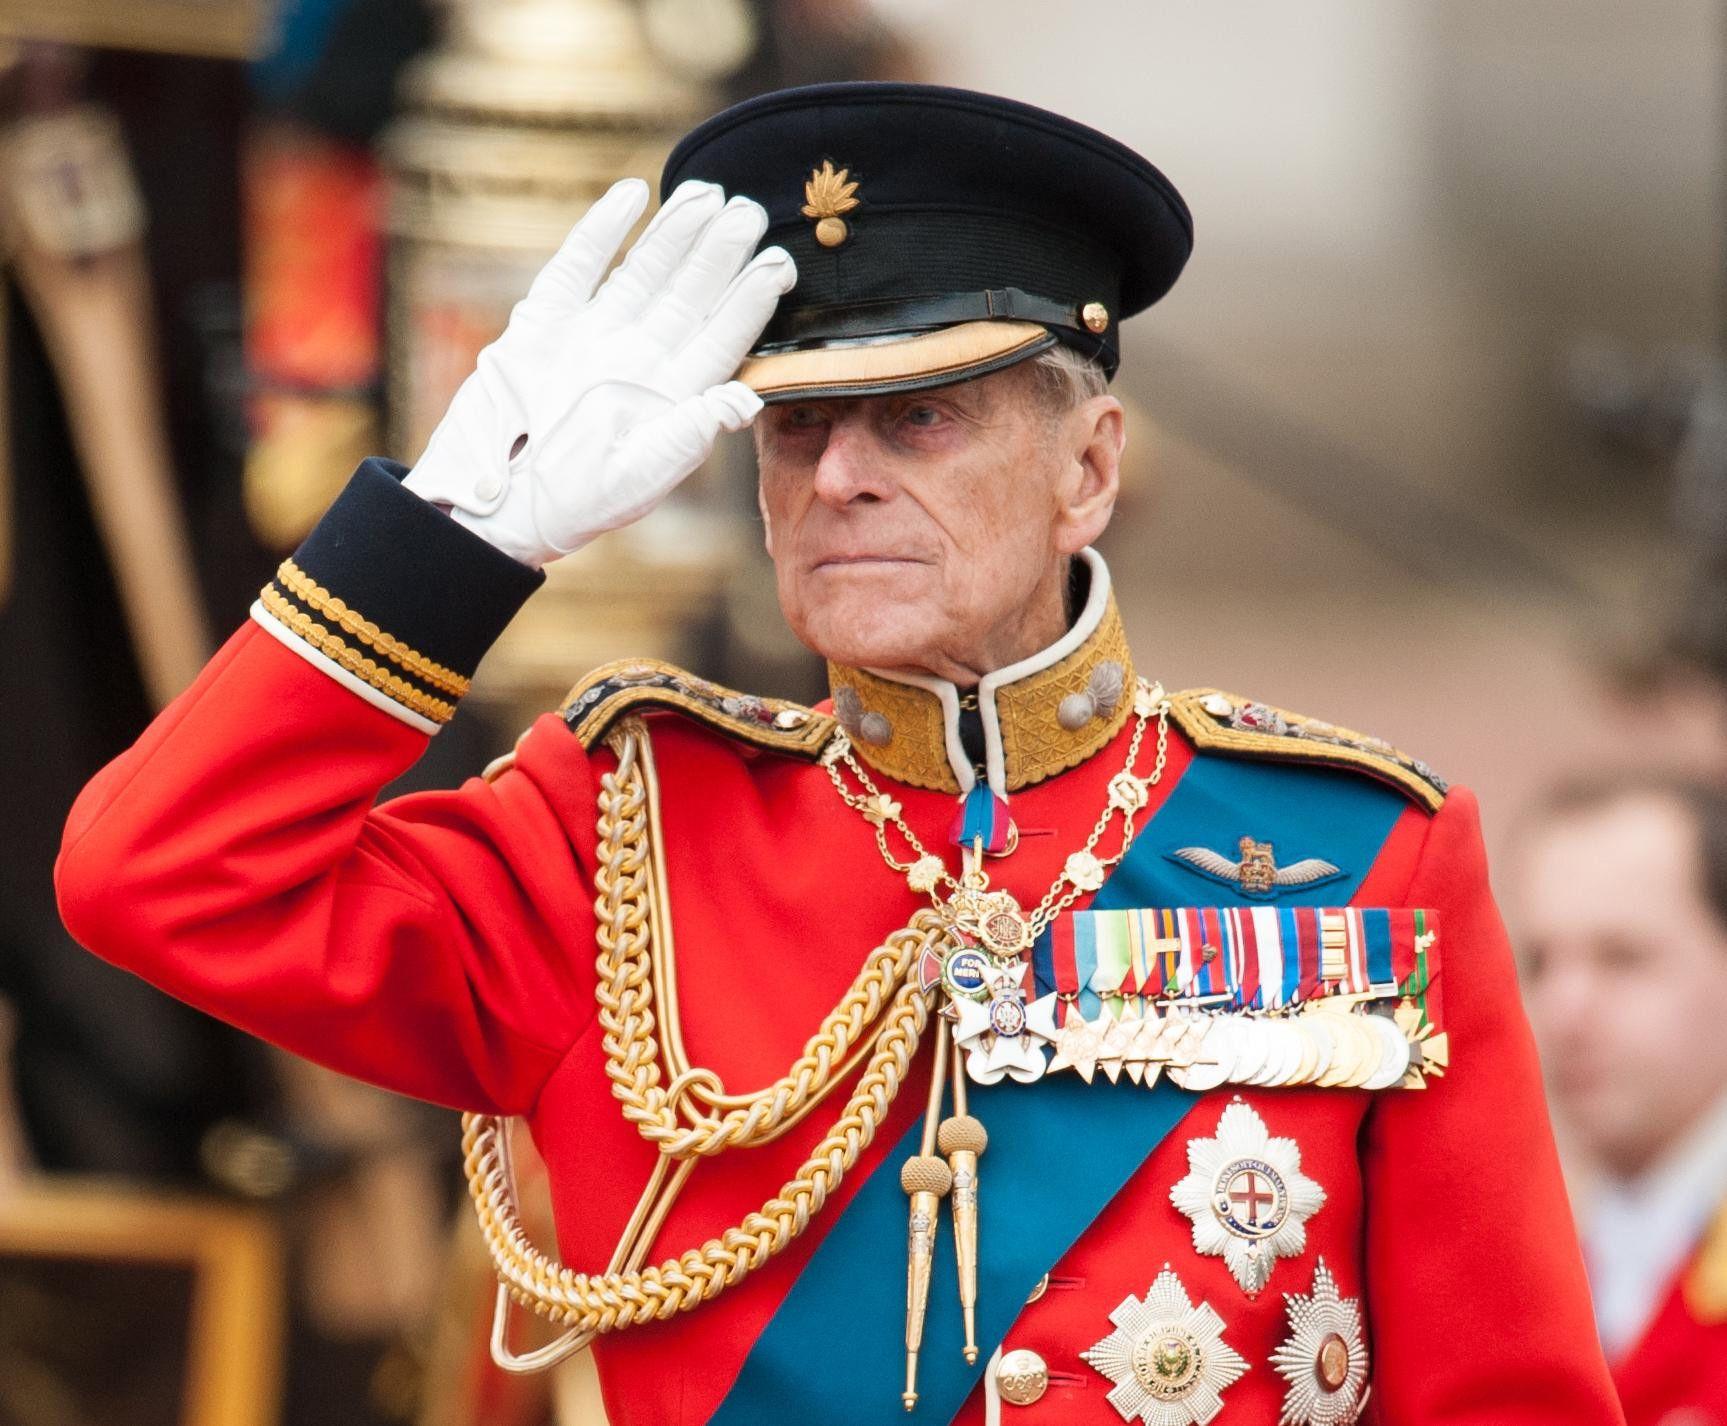 Membrii familiei regale britanice nu vor purta uniforme militare la funeraliile prinţului Philip